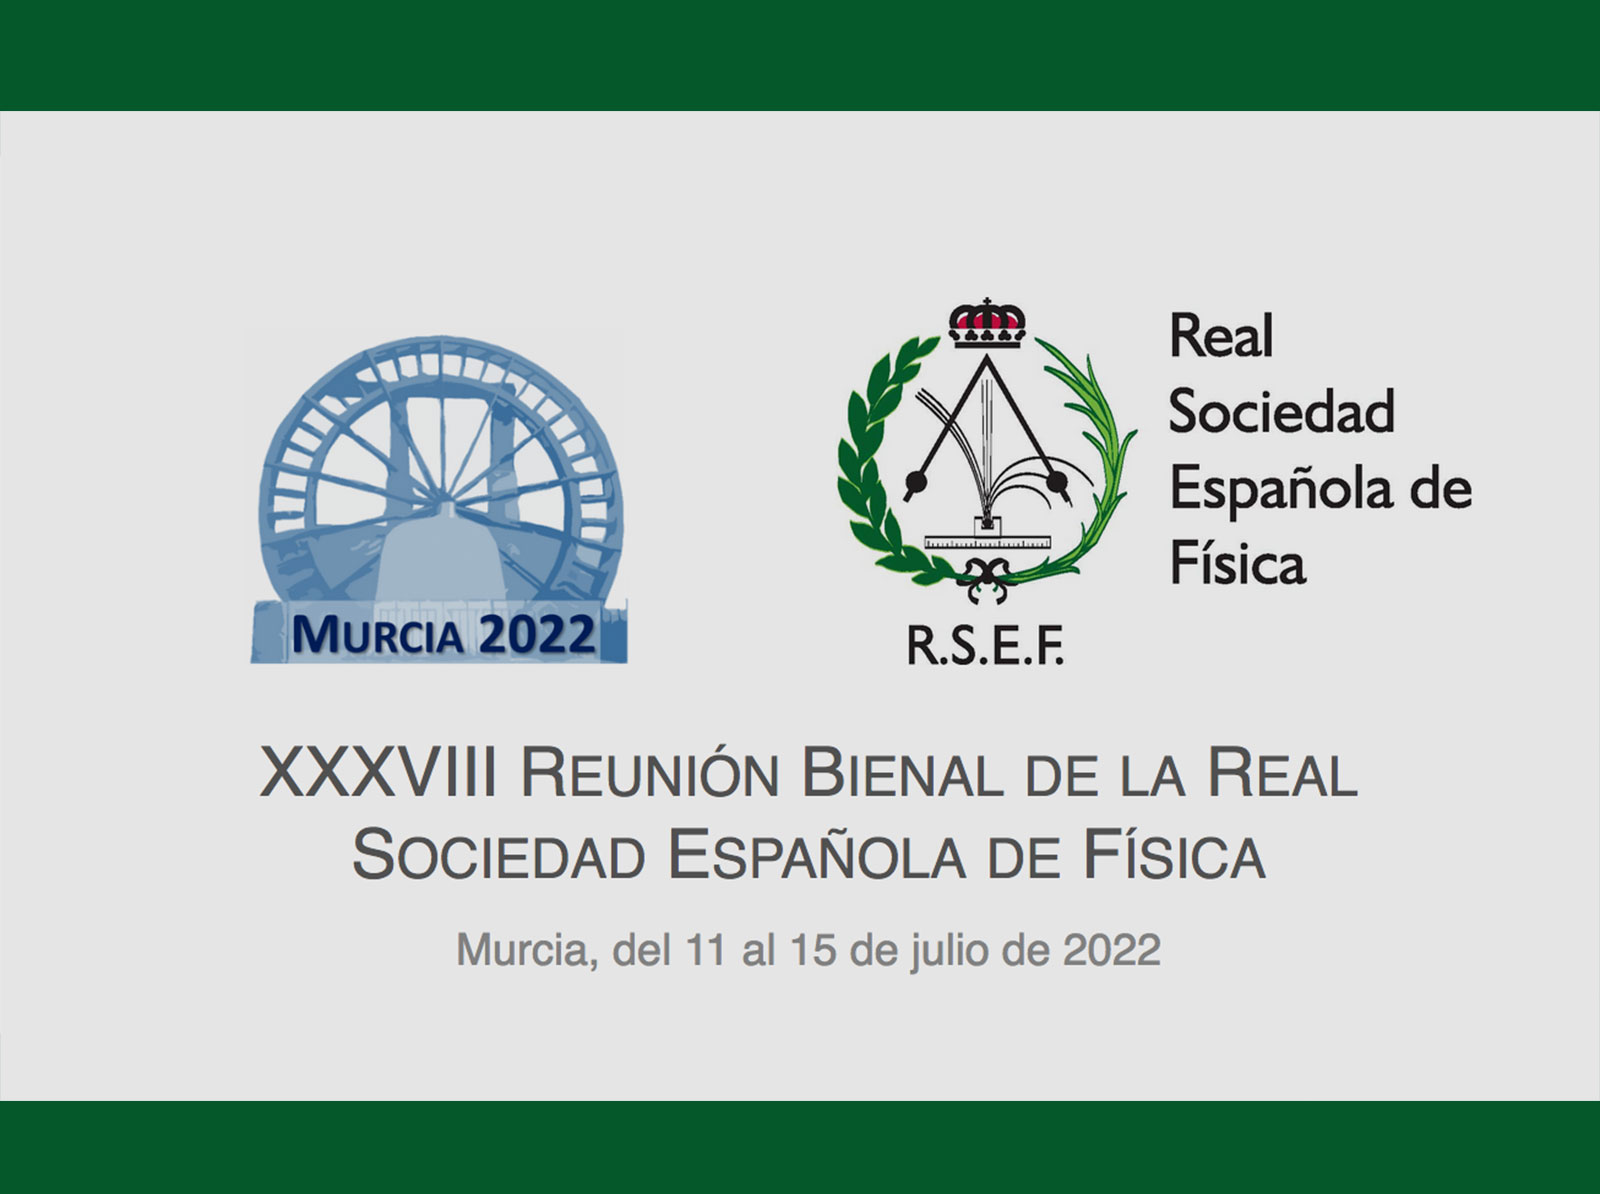 XXXVIII Reunión Bienal de la Real Sociedad Española de Física